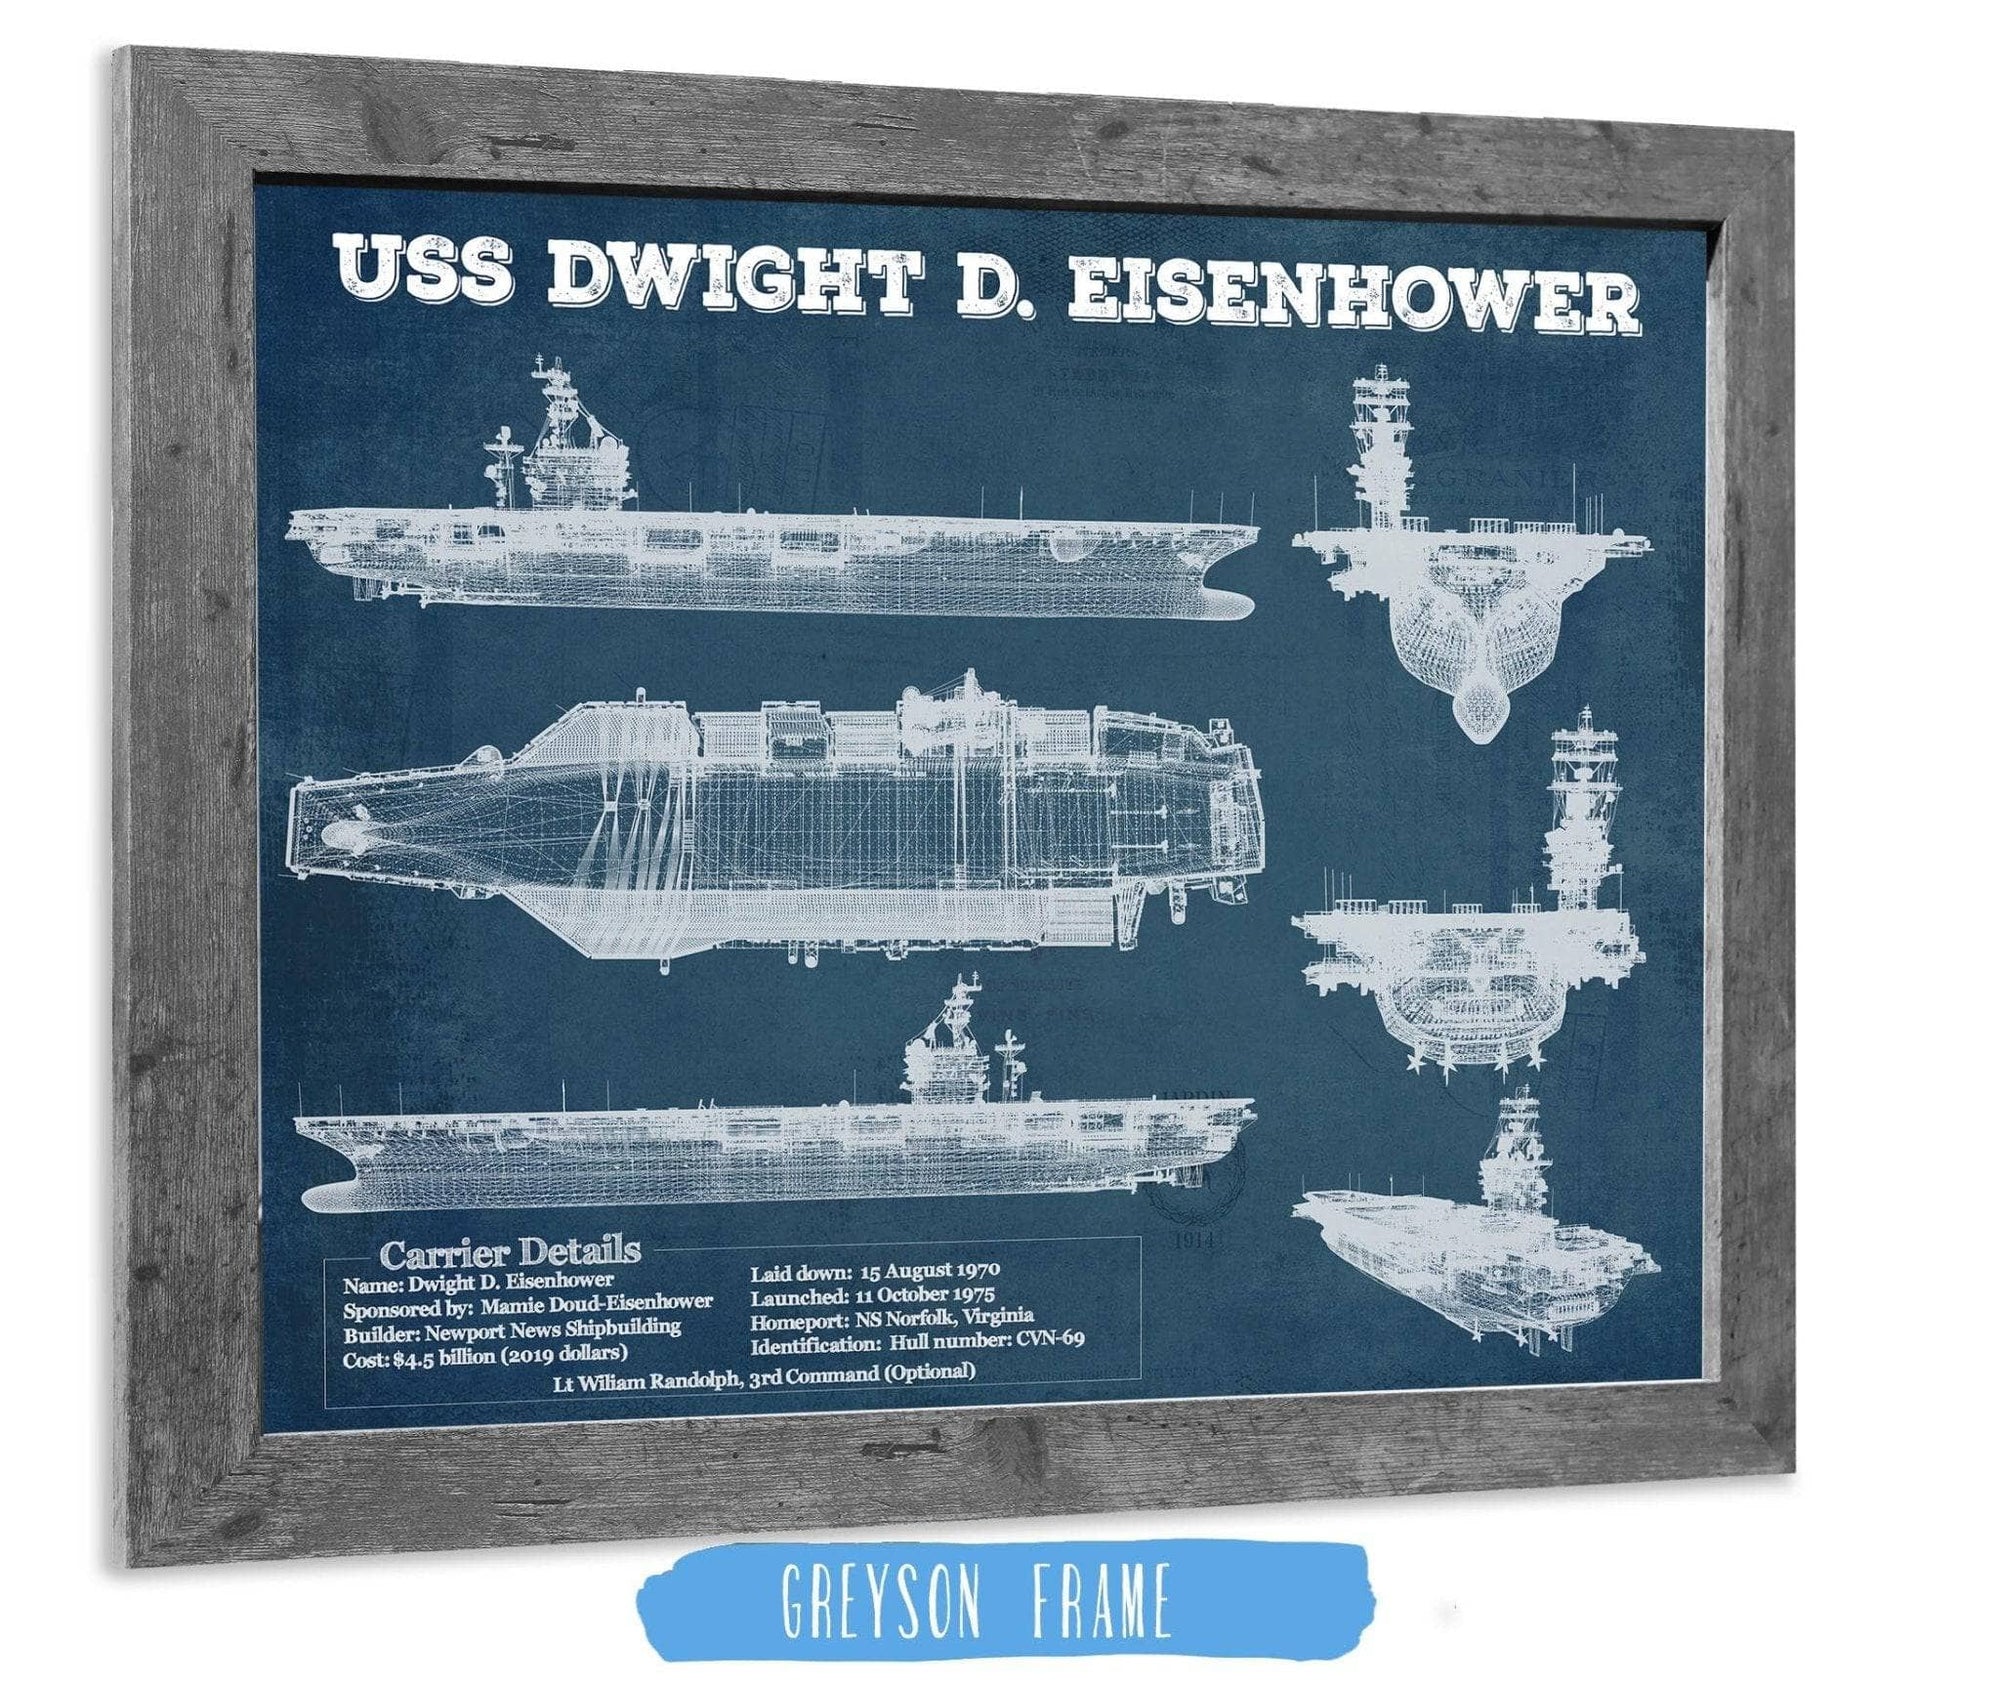 Cutler West Naval Military 14" x 11" / Greyson Frame USS Dwight Eisenhower CVN69 Aircraft Carrier Blueprint Original Military Wall Art - Customizable 835000060-TOP